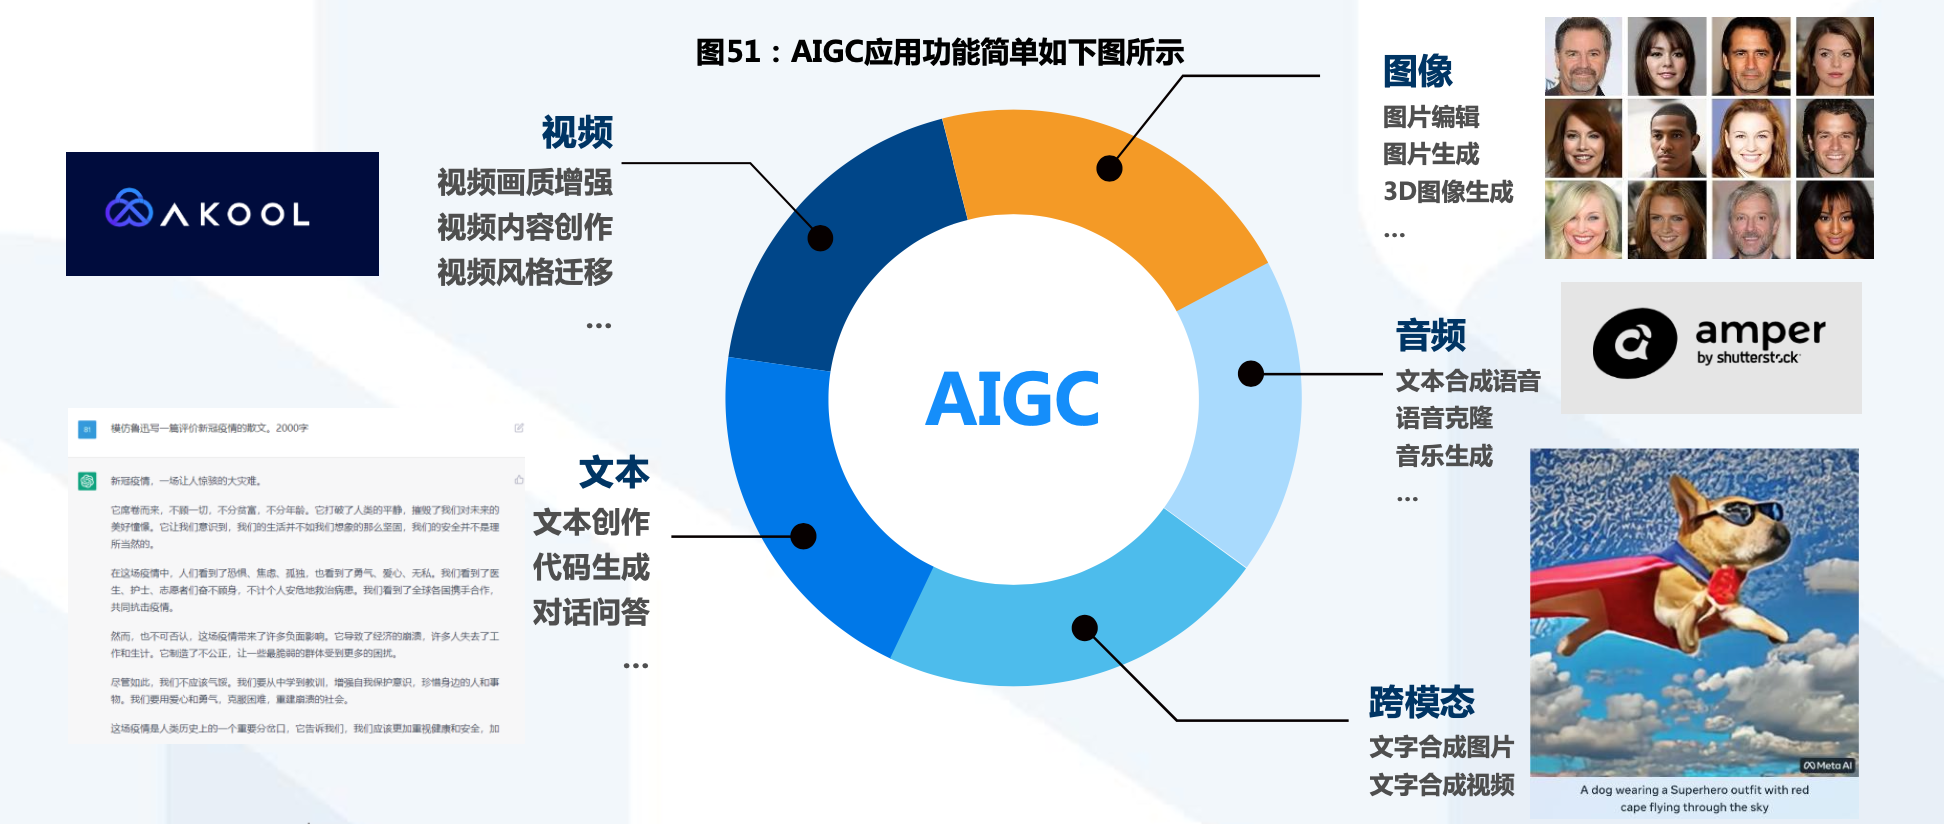 AIGC应用功能简单如图所示